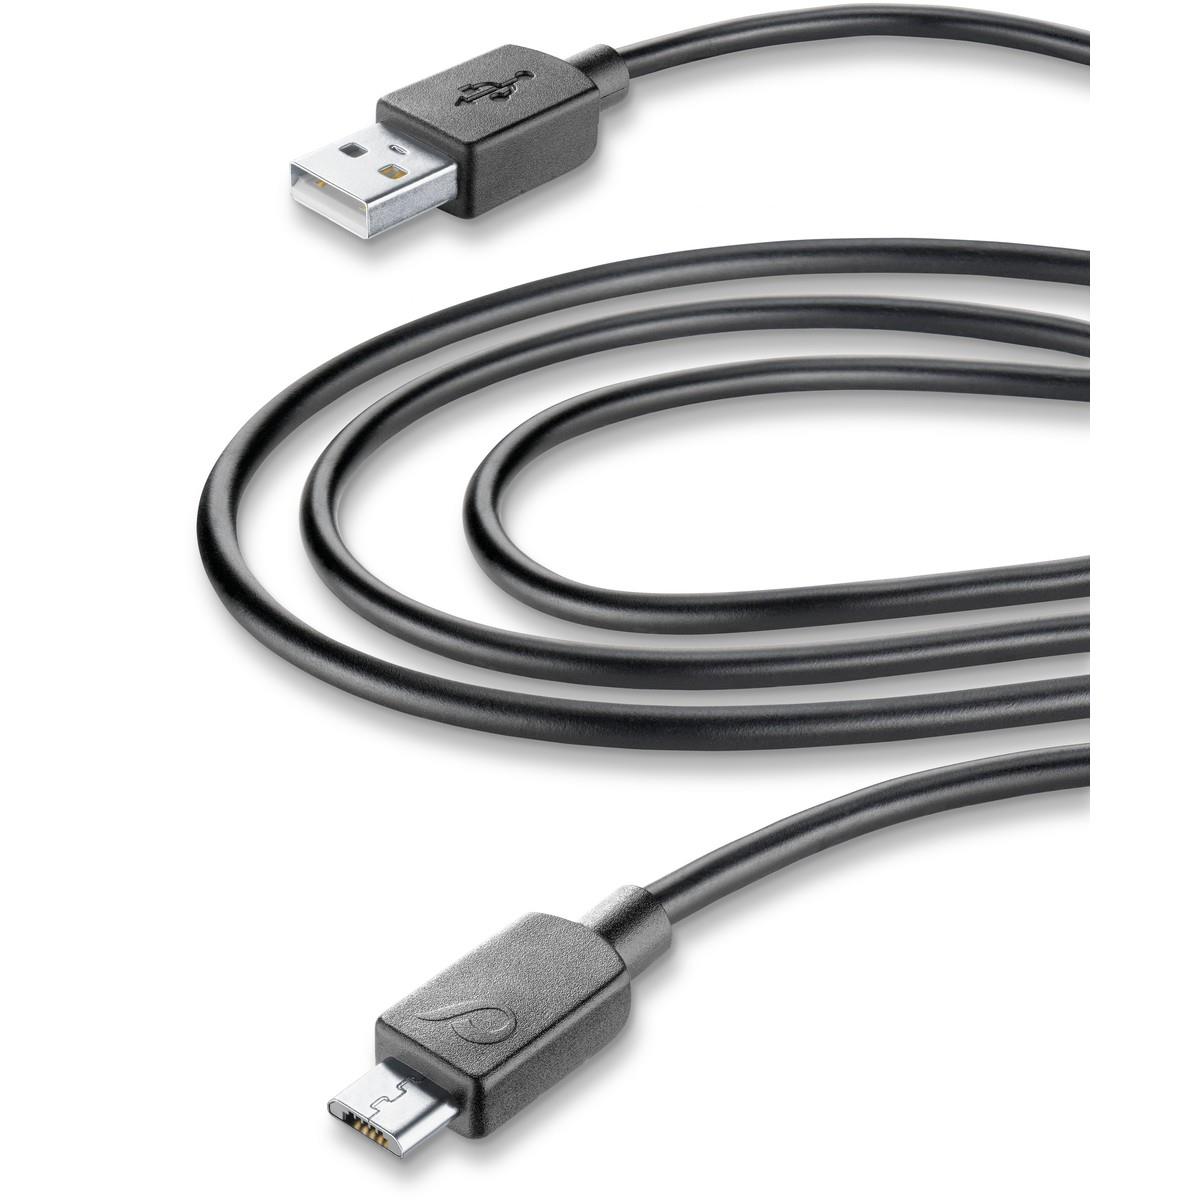 Lade- und Datenkabel 300cm USB Type-A auf Micro-USB